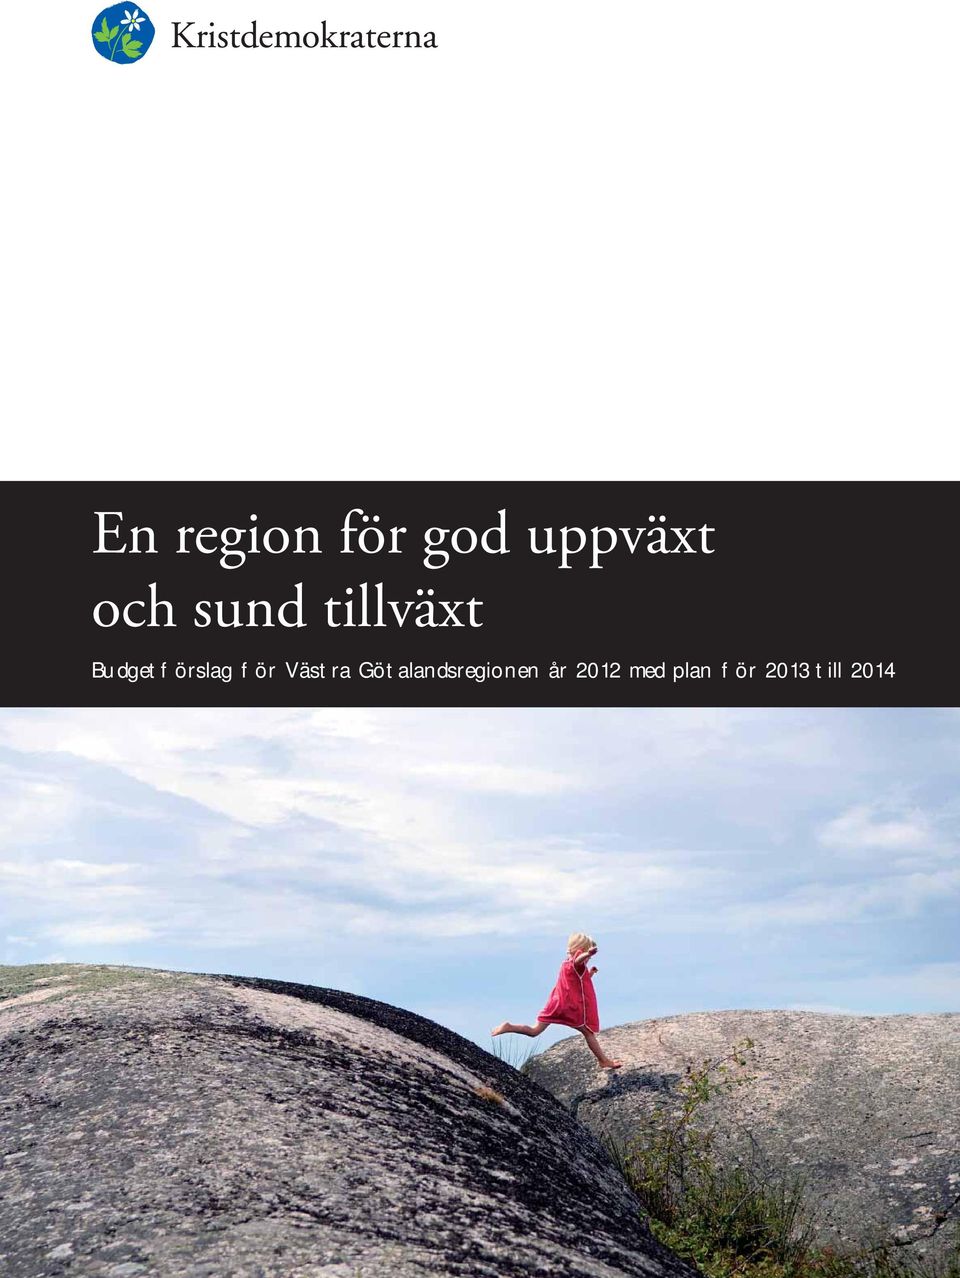 Götalandsregionen år 2012 med plan för